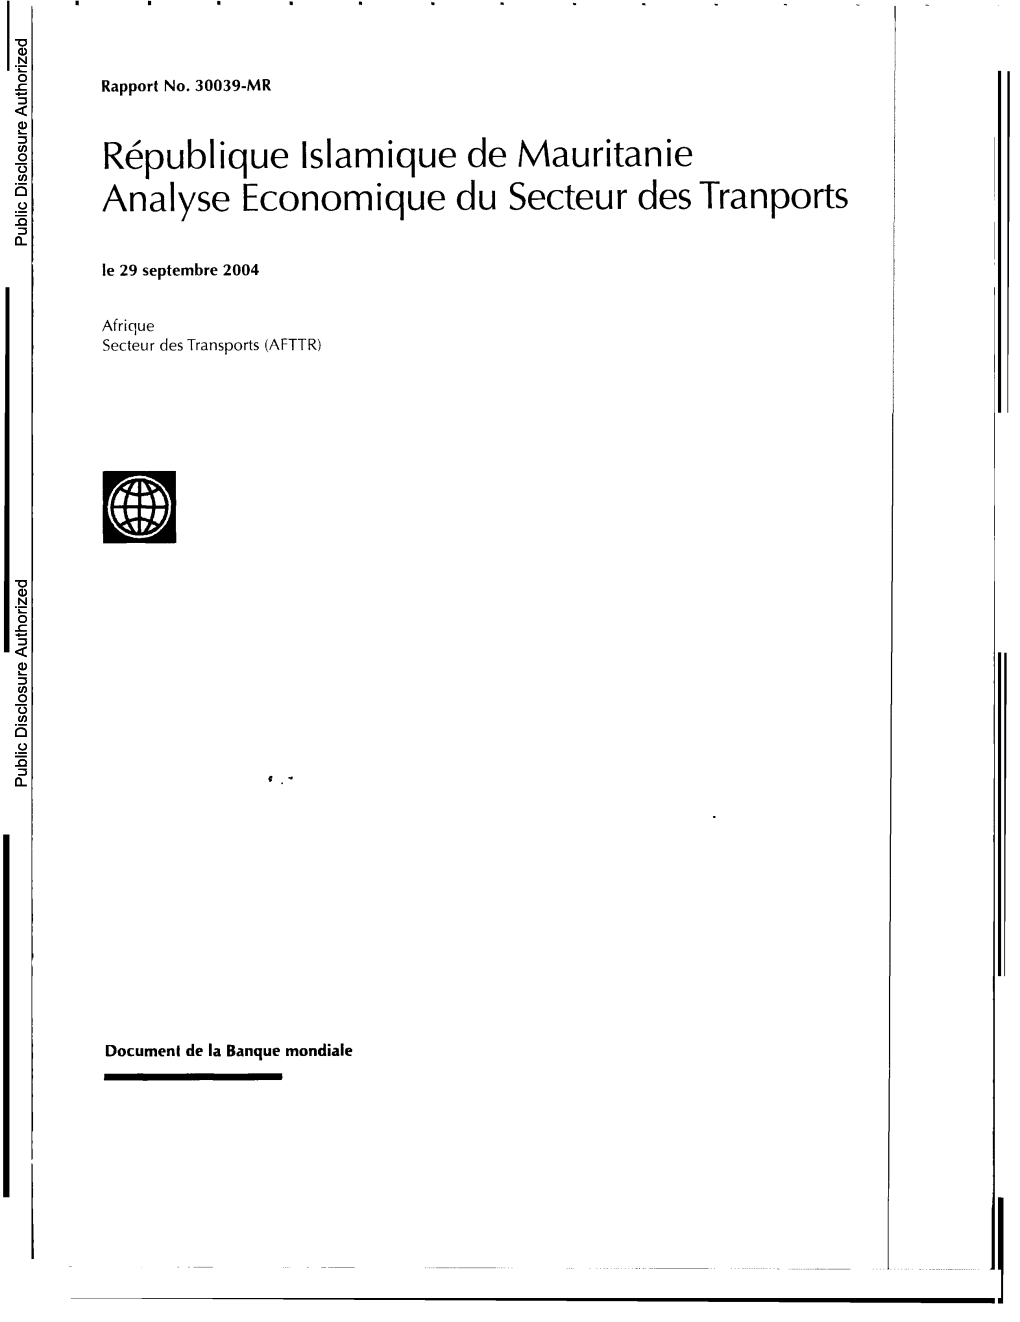 République Islamique De Mauritanie Analyse Economique Du Secteur Des Tranports Public Disclosure Authorized Le 29 Septembre 2004